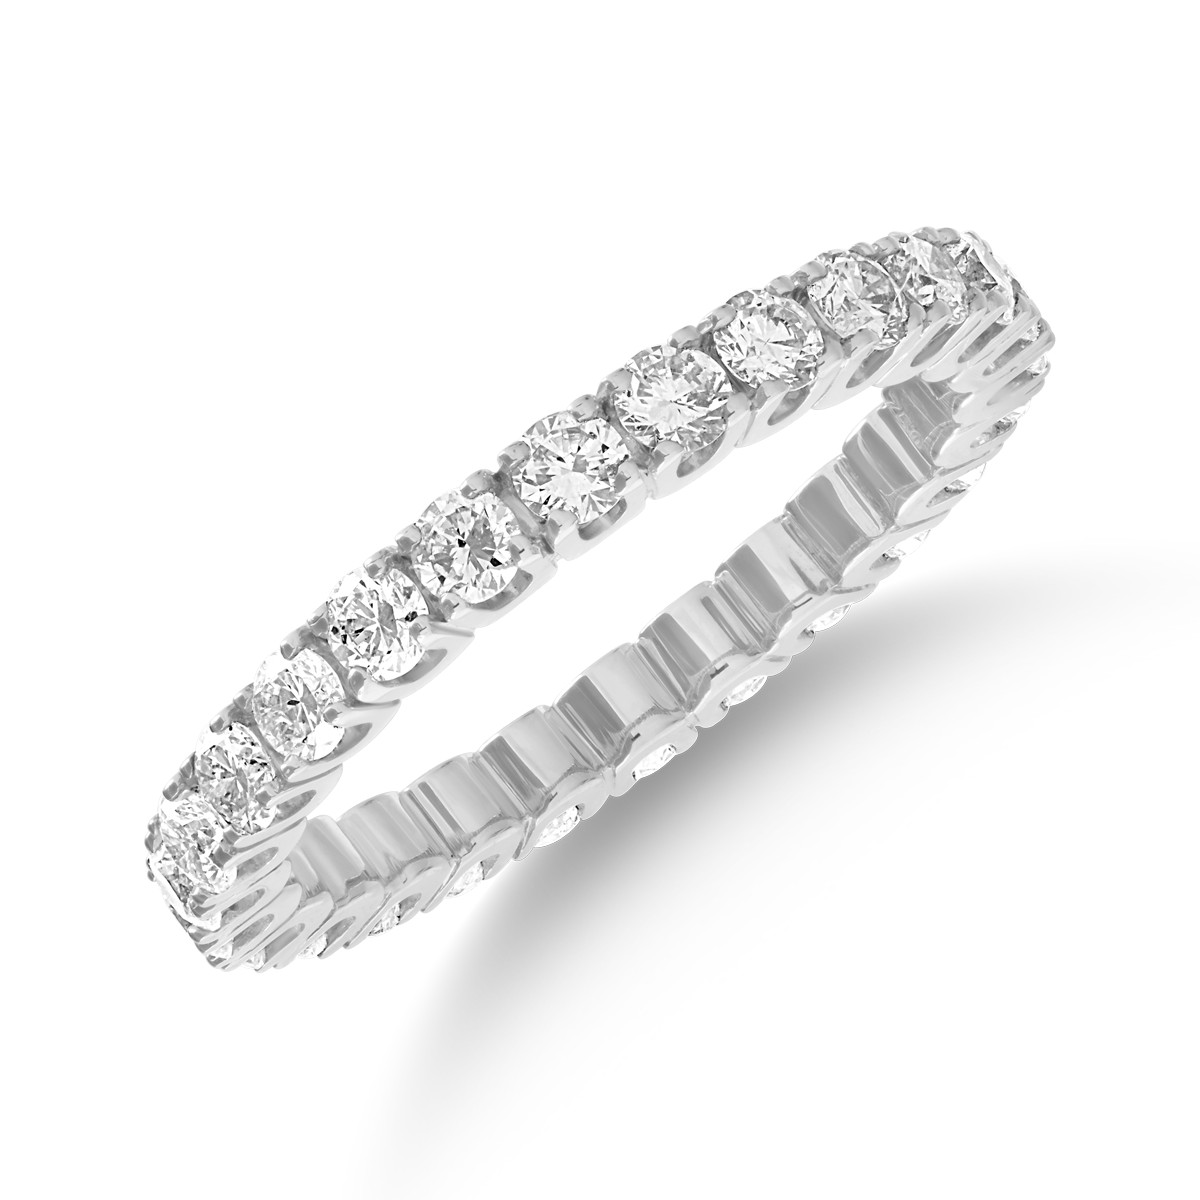 18K fehérarany végtelenített gyűrű 2ct gyémántokkal